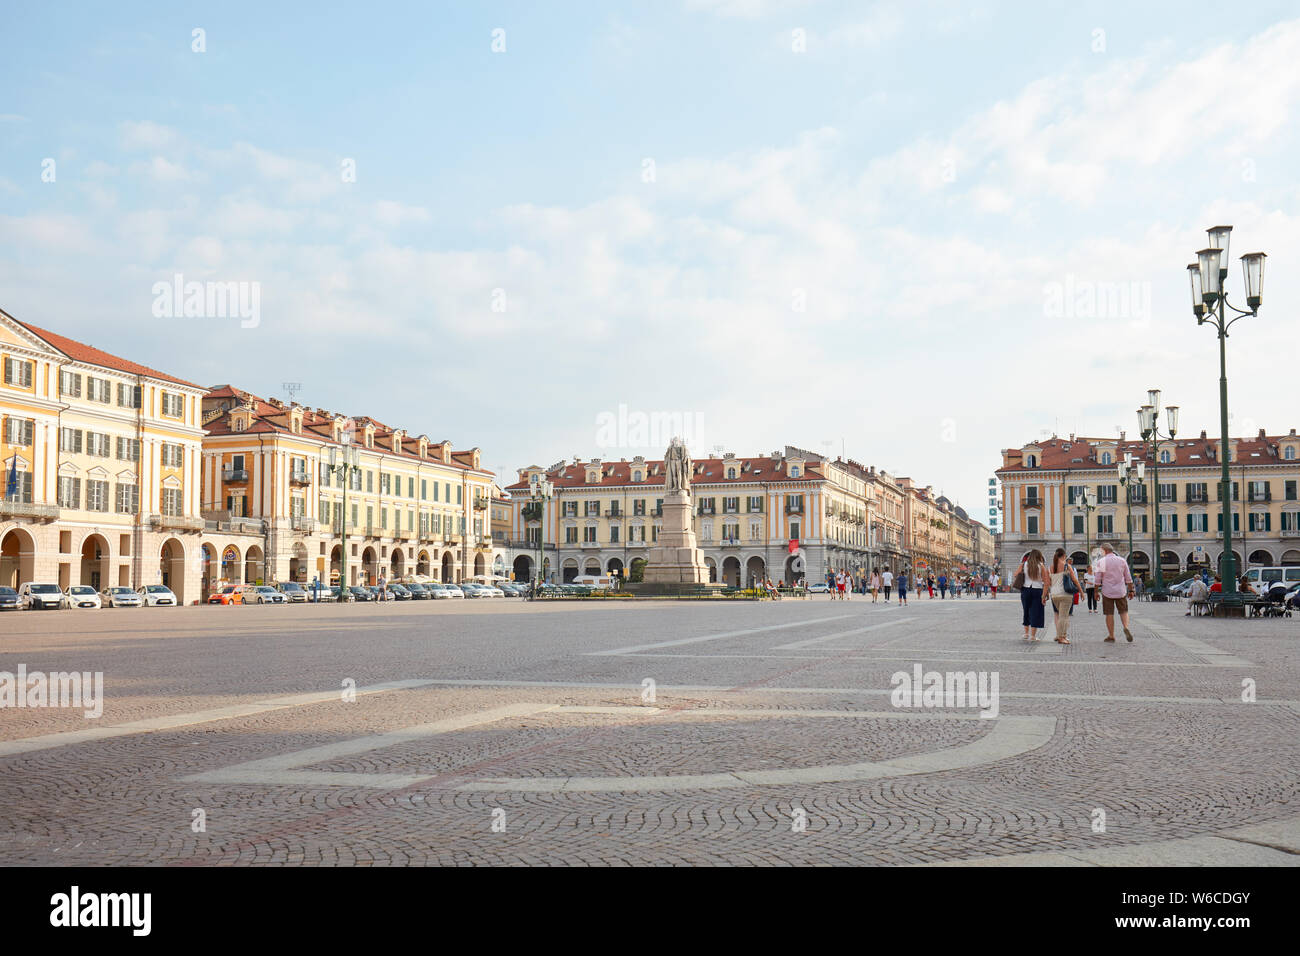 CUNEO, Italia - 13 agosto 2015: piazza Galimberti con cittadini e turisti in una soleggiata giornata estiva, cielo blu in Cuneo, Italia. Foto Stock